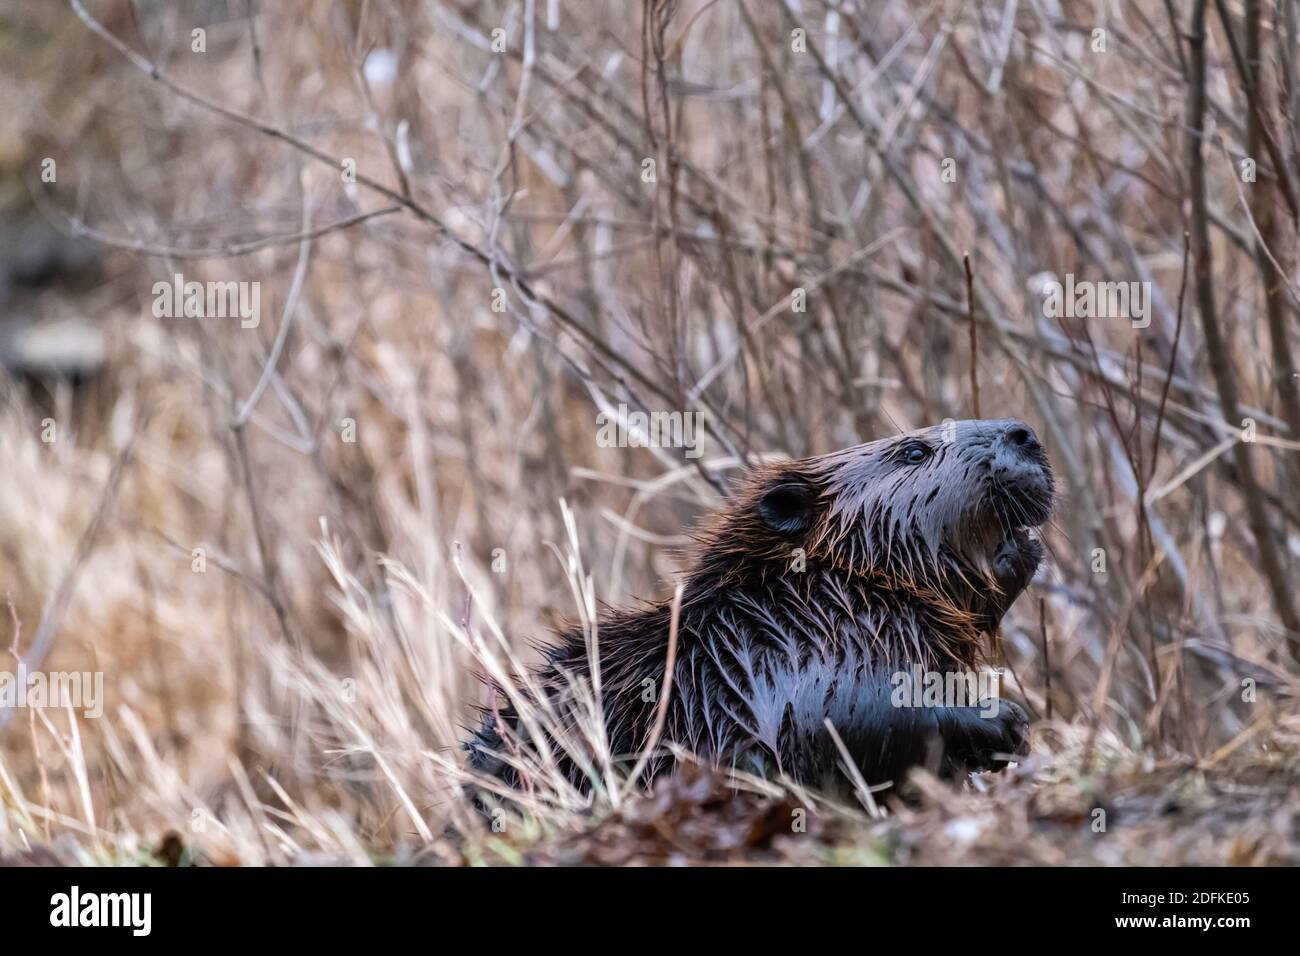 Un caster canadese con pelliccia bagnata sta emergendo da erba secca e alberi nudi mentre si riuniscono rami per il suo Lodge a fine autunno. Foto Stock